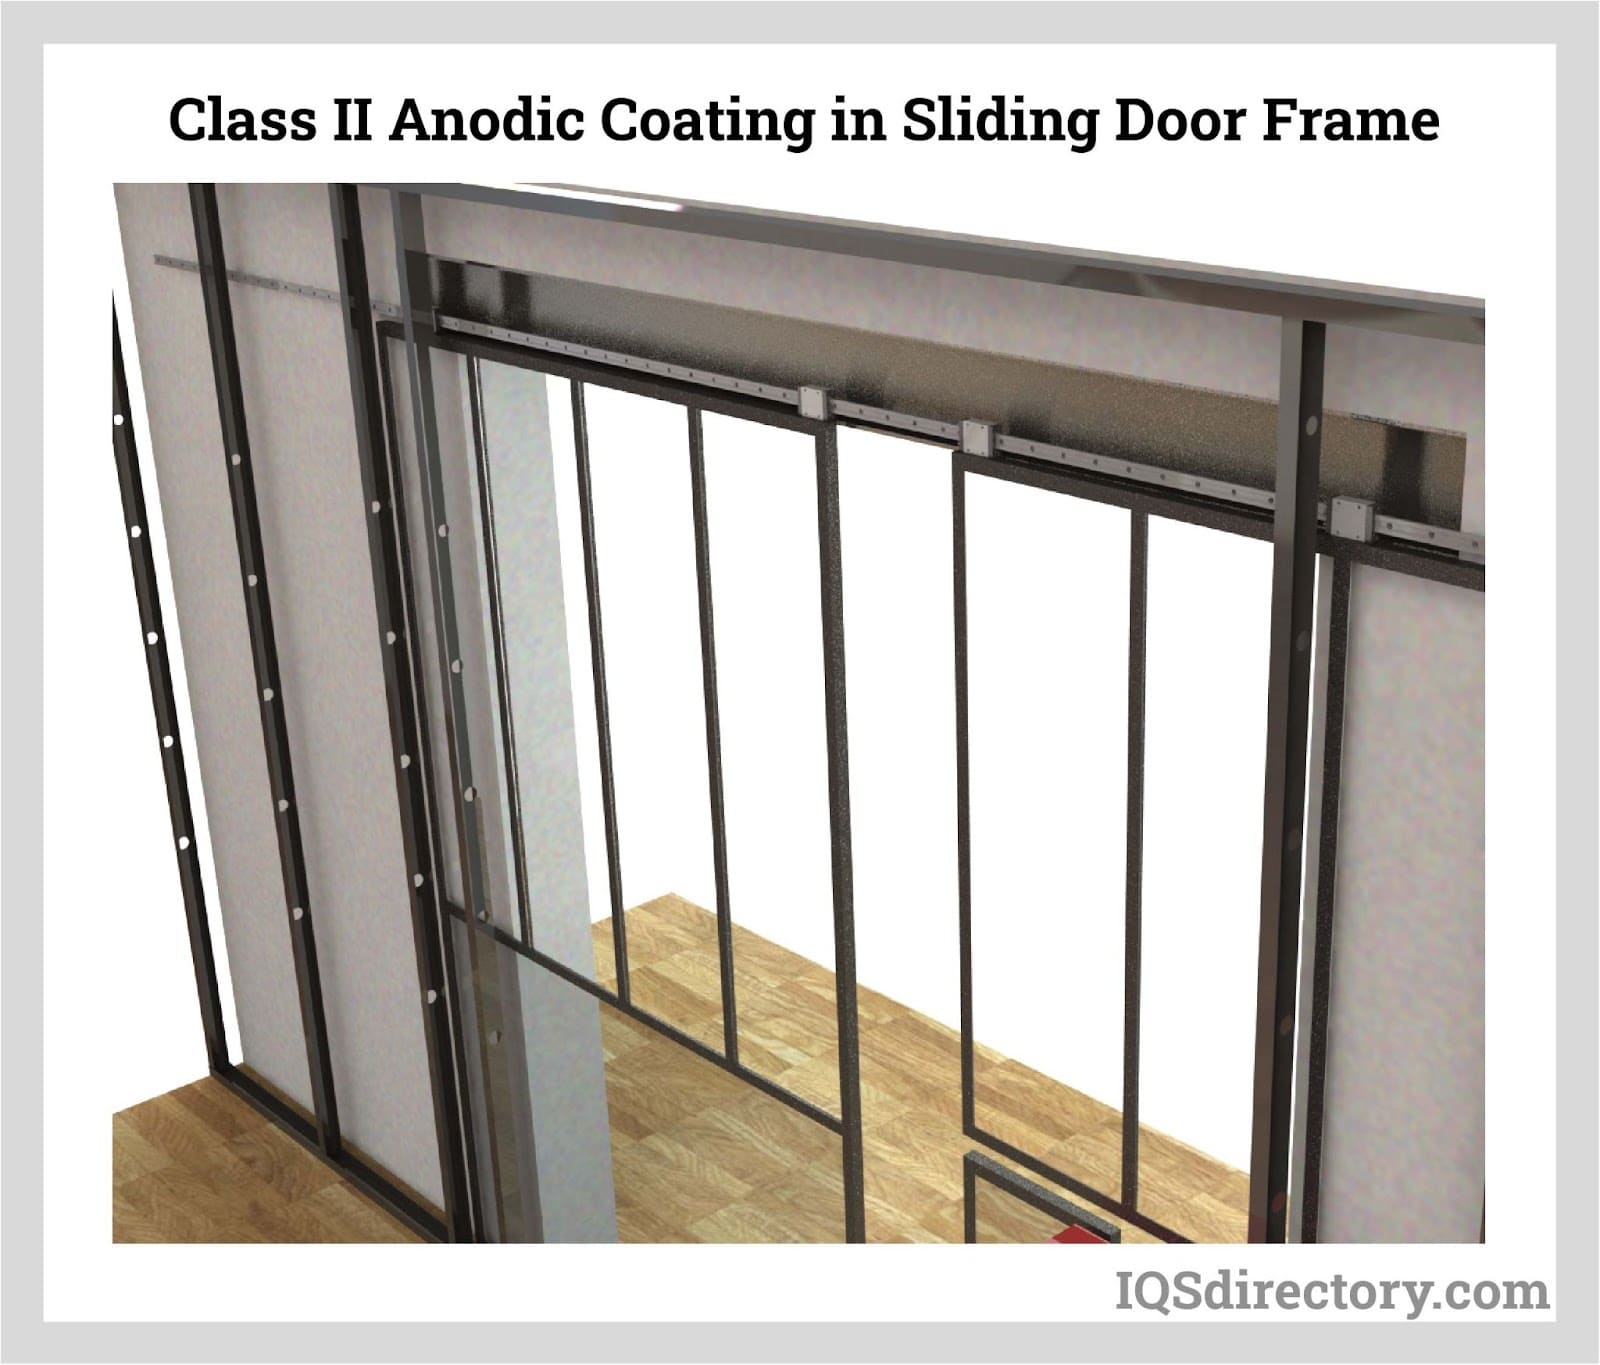 Class II Anodic Coating in Sliding Door Frame